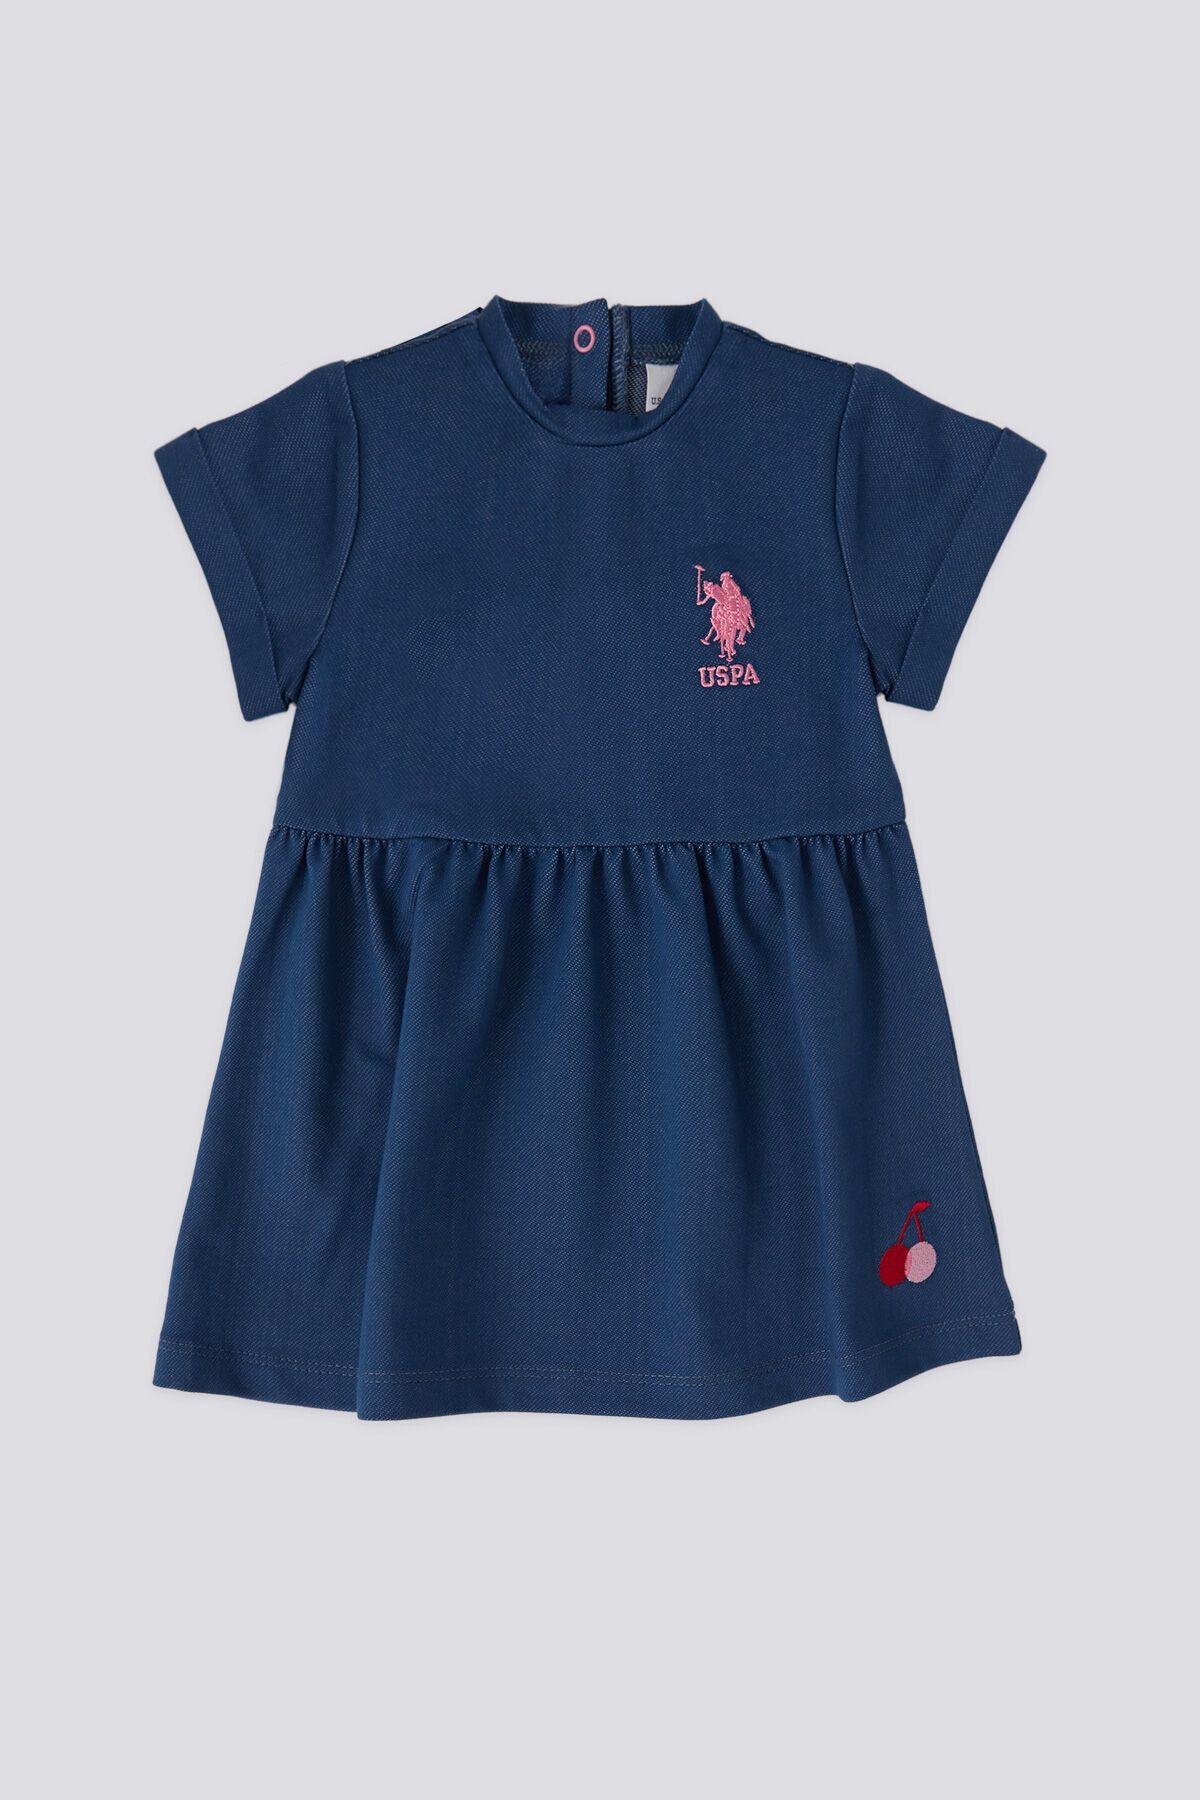 U.S. Polo Assn. U.S. Polo Assn. Kız Bebek Lacivert Elbise